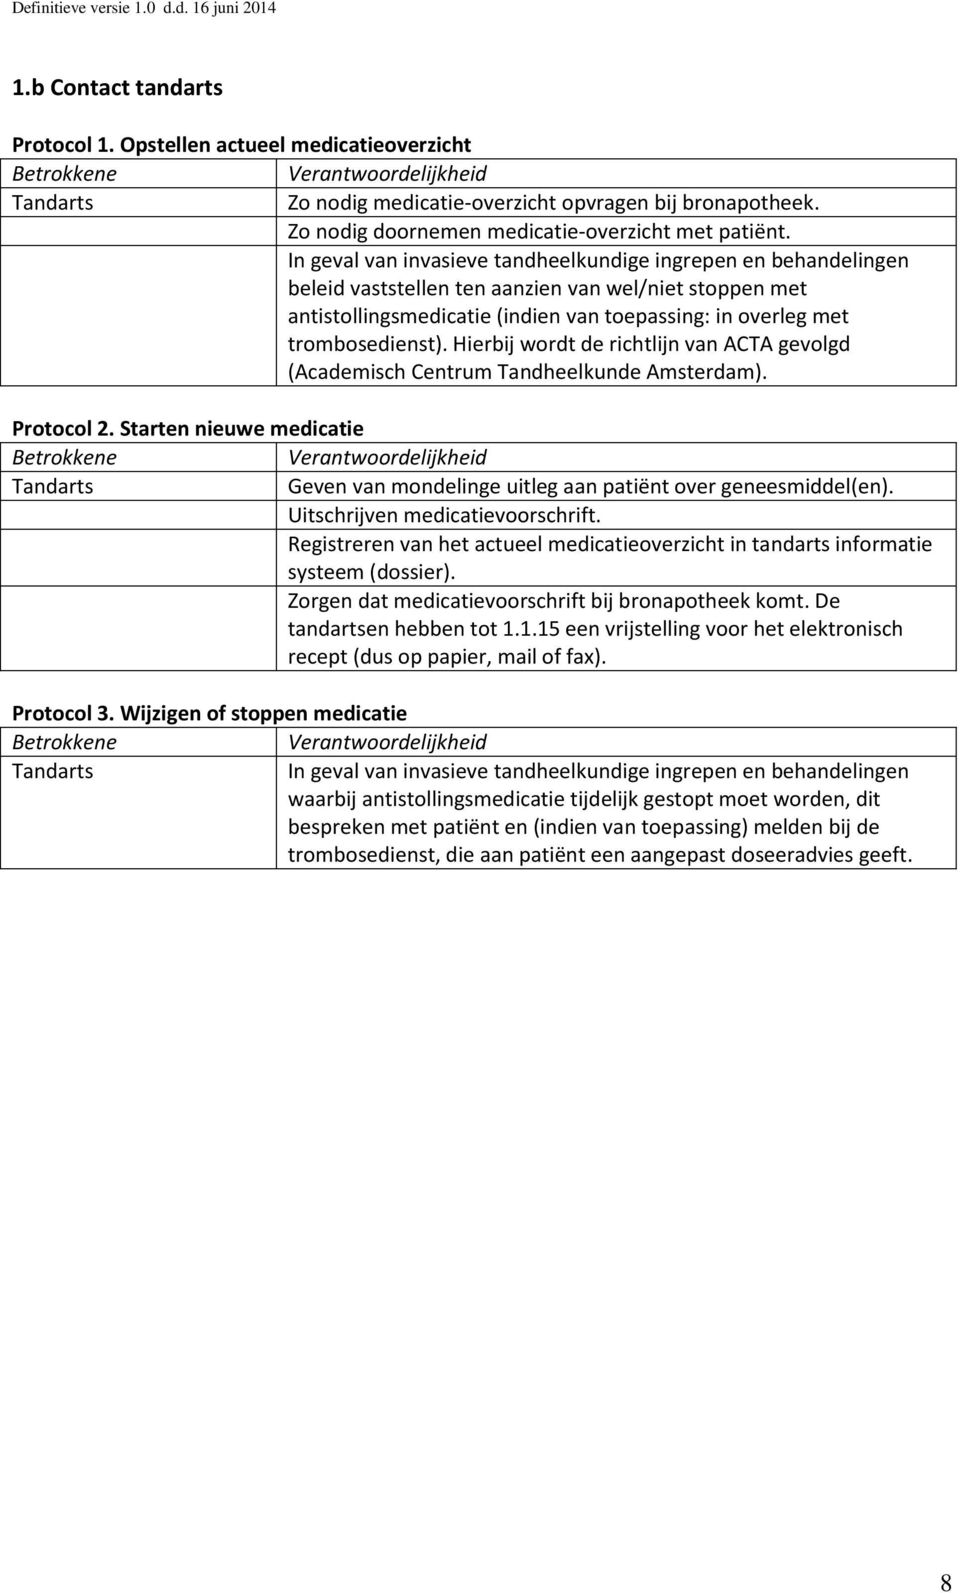 Hierbij wordt de richtlijn van ACTA gevolgd (Academisch Centrum Tandheelkunde Amsterdam). Protocol 2. Starten nieuwe medicatie Tandarts Geven van mondelinge uitleg aan patiënt over geneesmiddel(en).